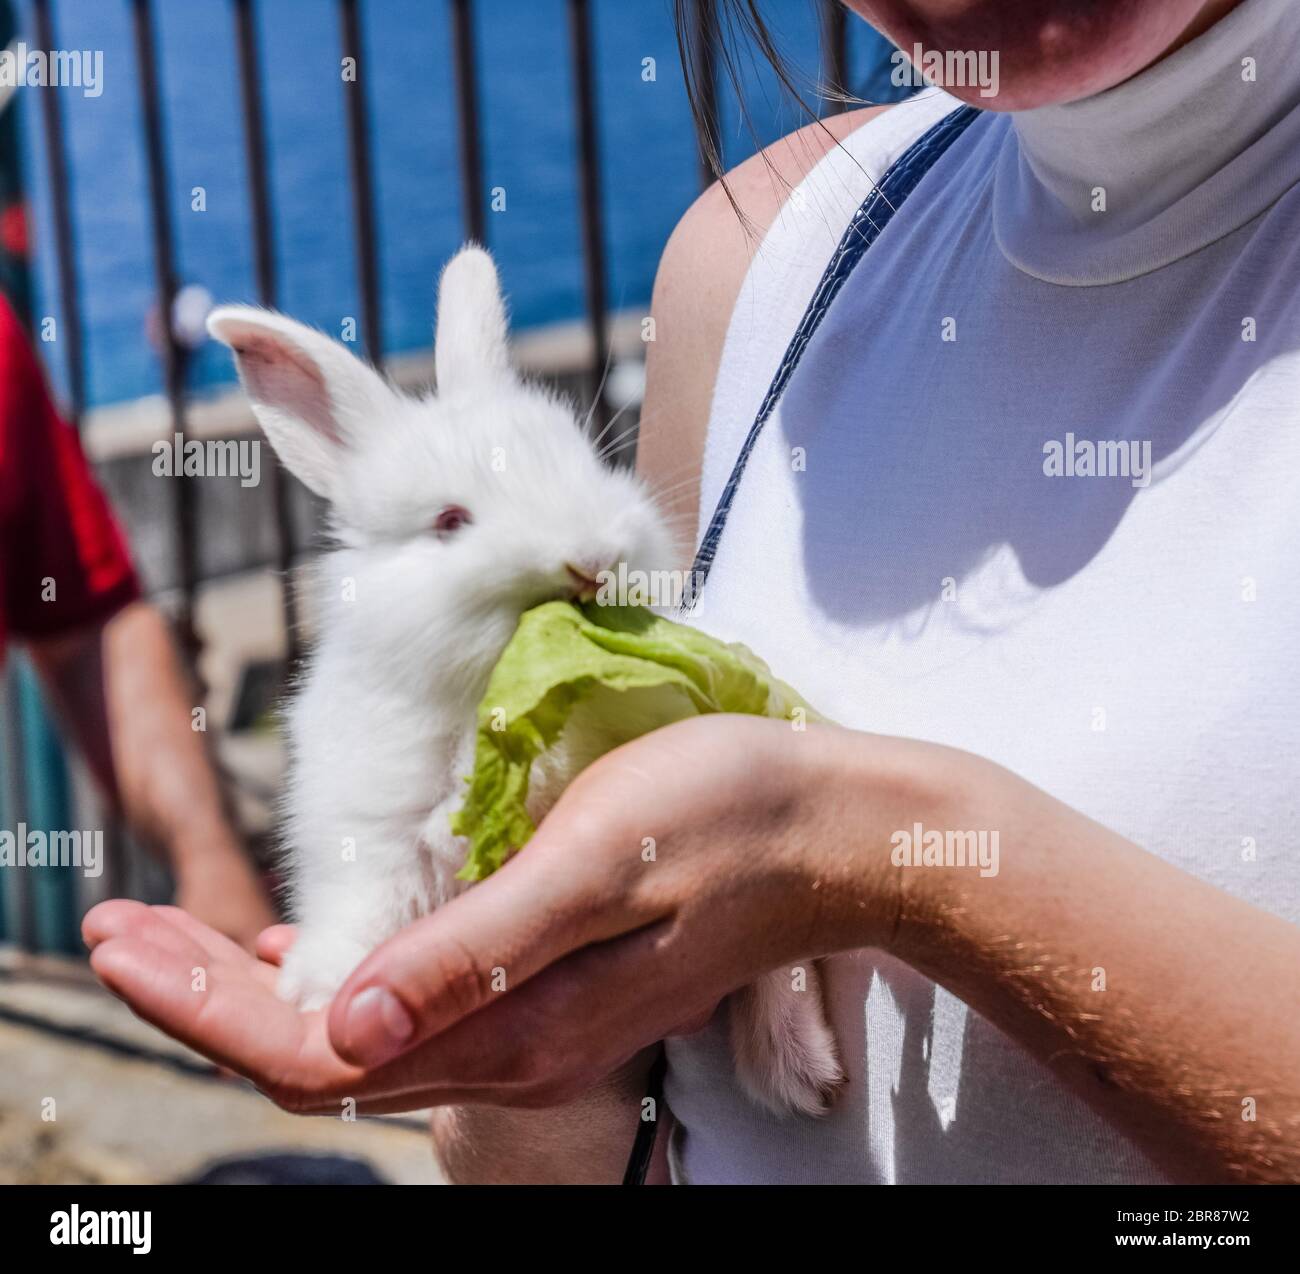 La femme tient un lapin blanc. Le lapin sera une feuille de laitue. Banque D'Images